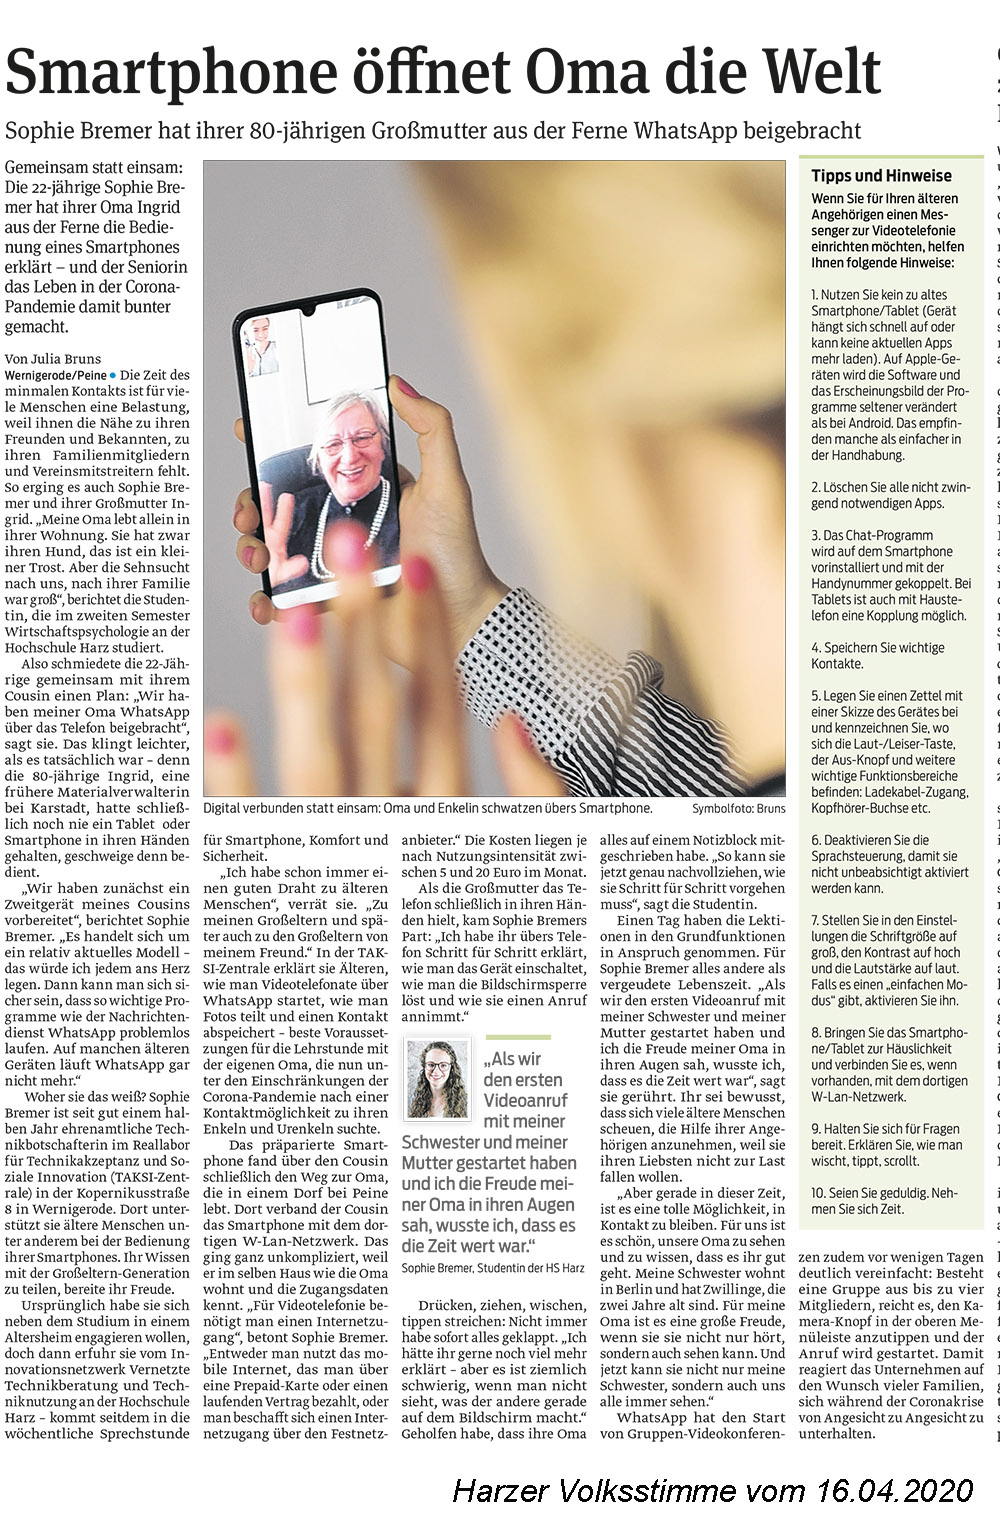 Bericht in der Harzer Volksstimme über unsere ehrenamtliche Technikbotschafter Sophie Bremer aus Peine, die ihrer Oma WhatsApp übers Telefon beigebracht hat.